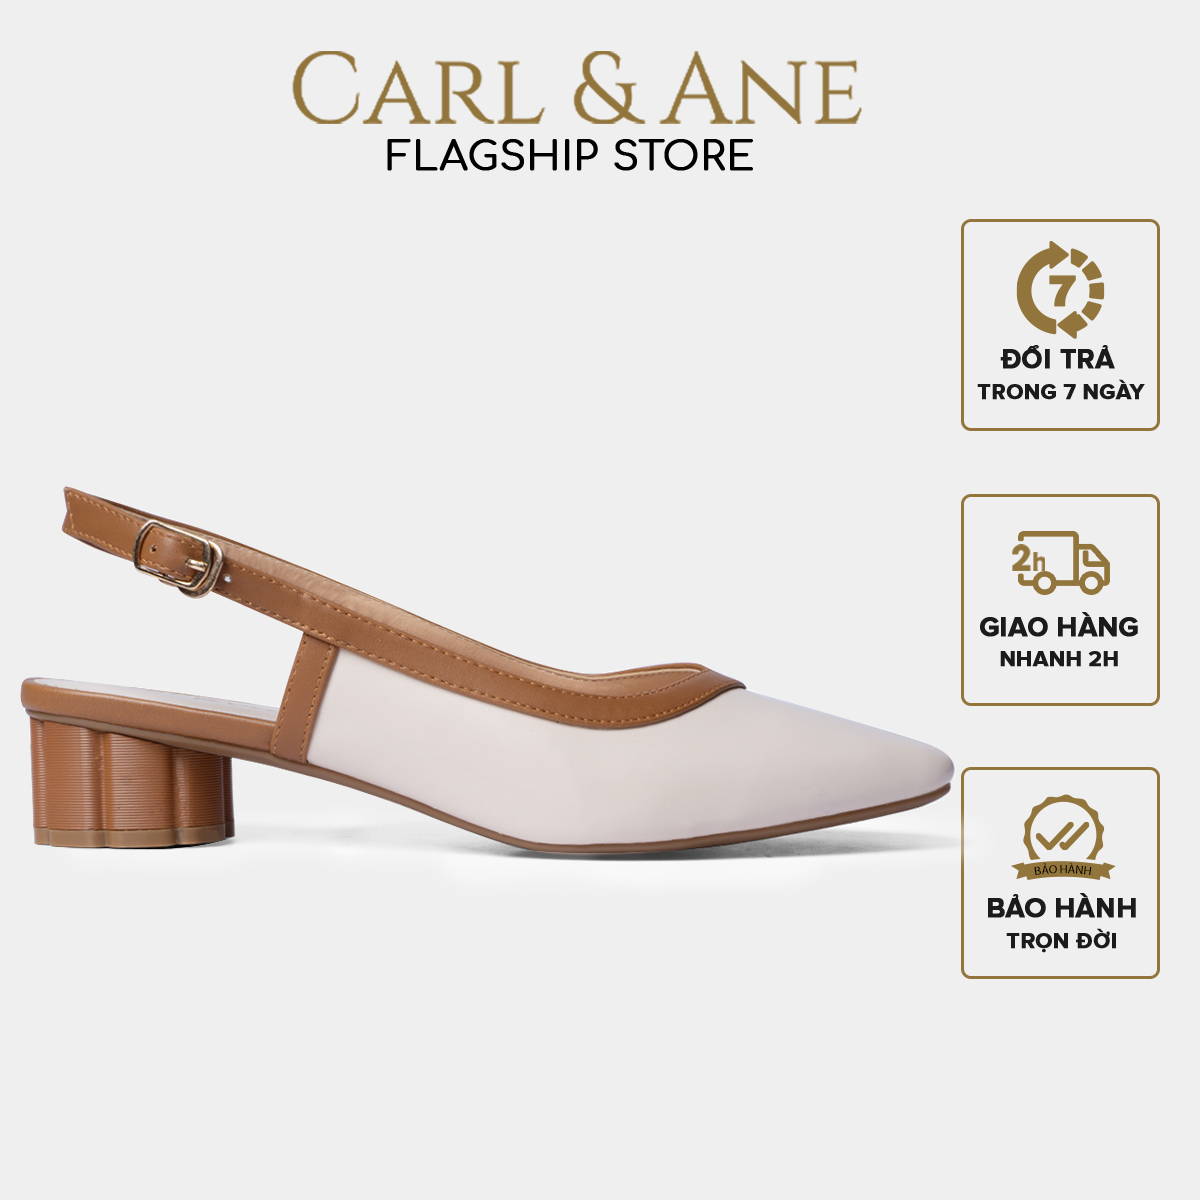 Carl & Ane - Giày cao gót thời trang mũi vuông hở gót phối dây tinh tế cao 3cm màu kem nhạt - CL005